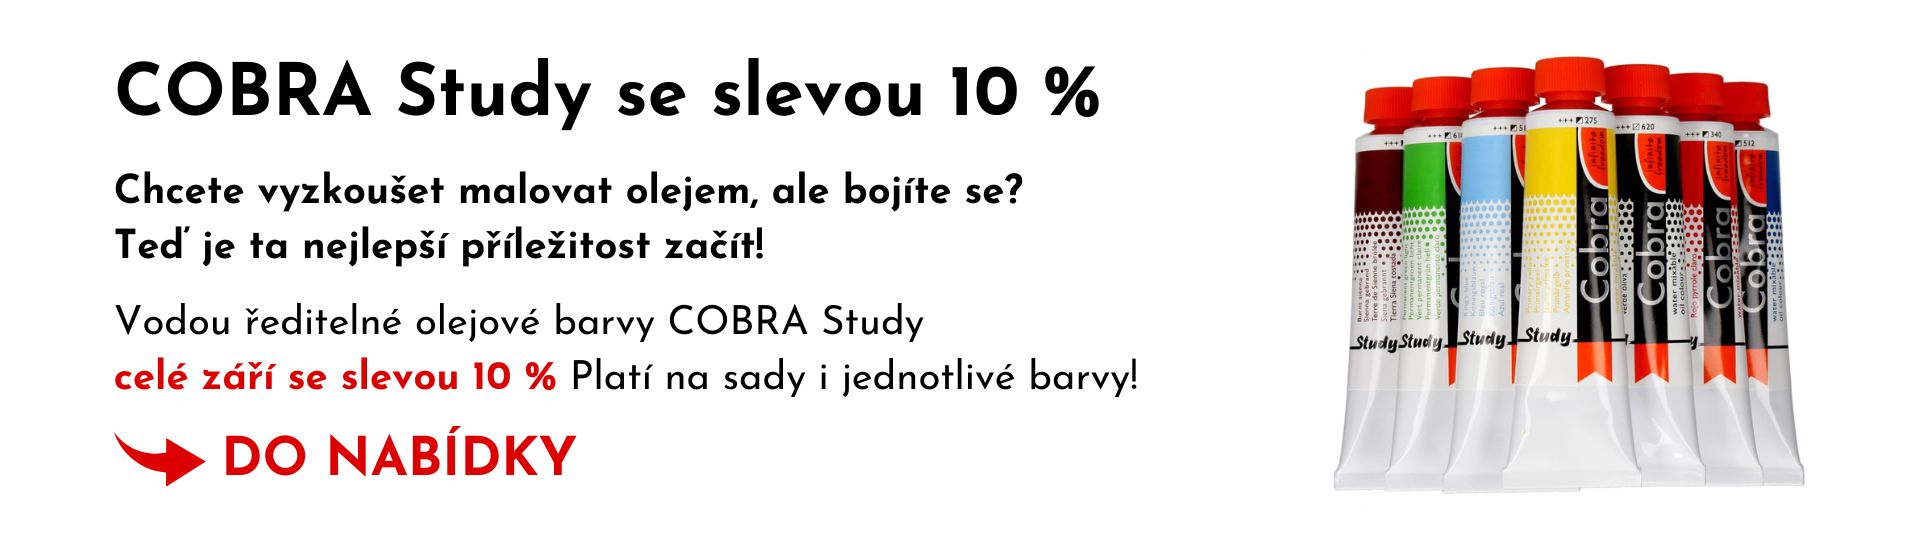 Cobra Study